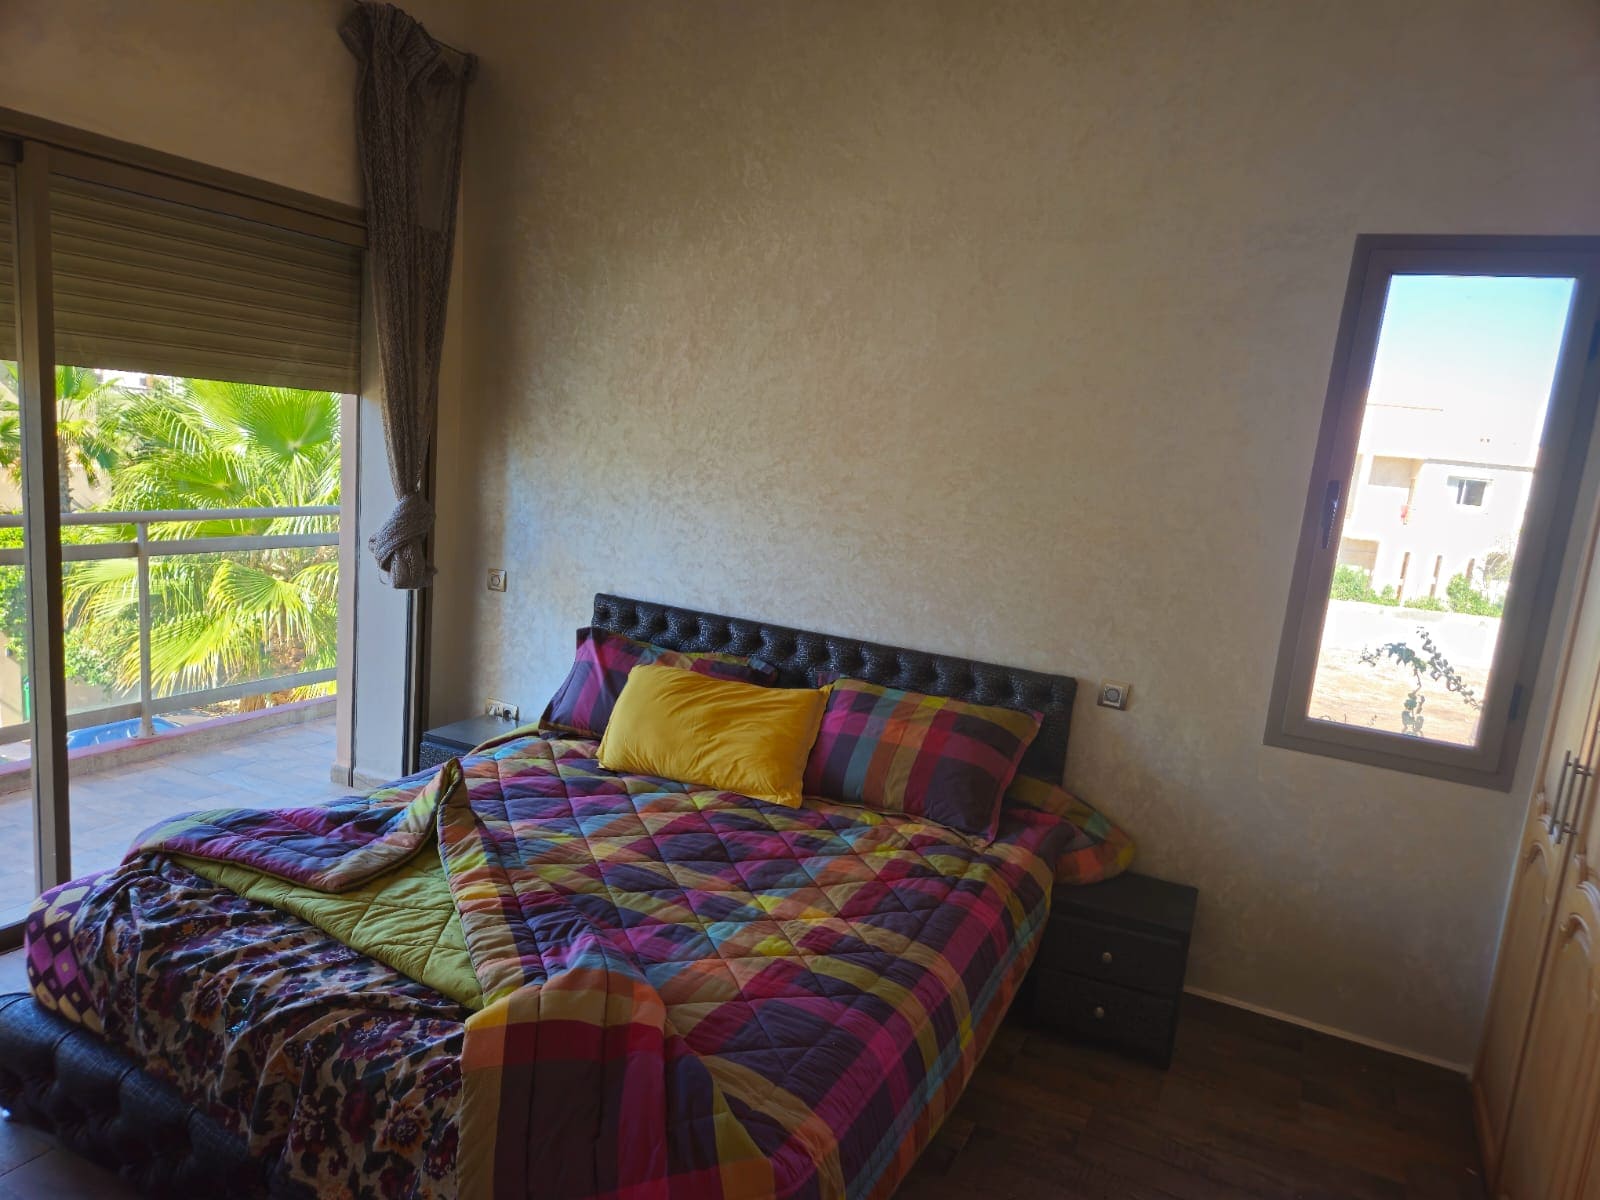 Chambre à coucher d'une villa à louer à Marrakech